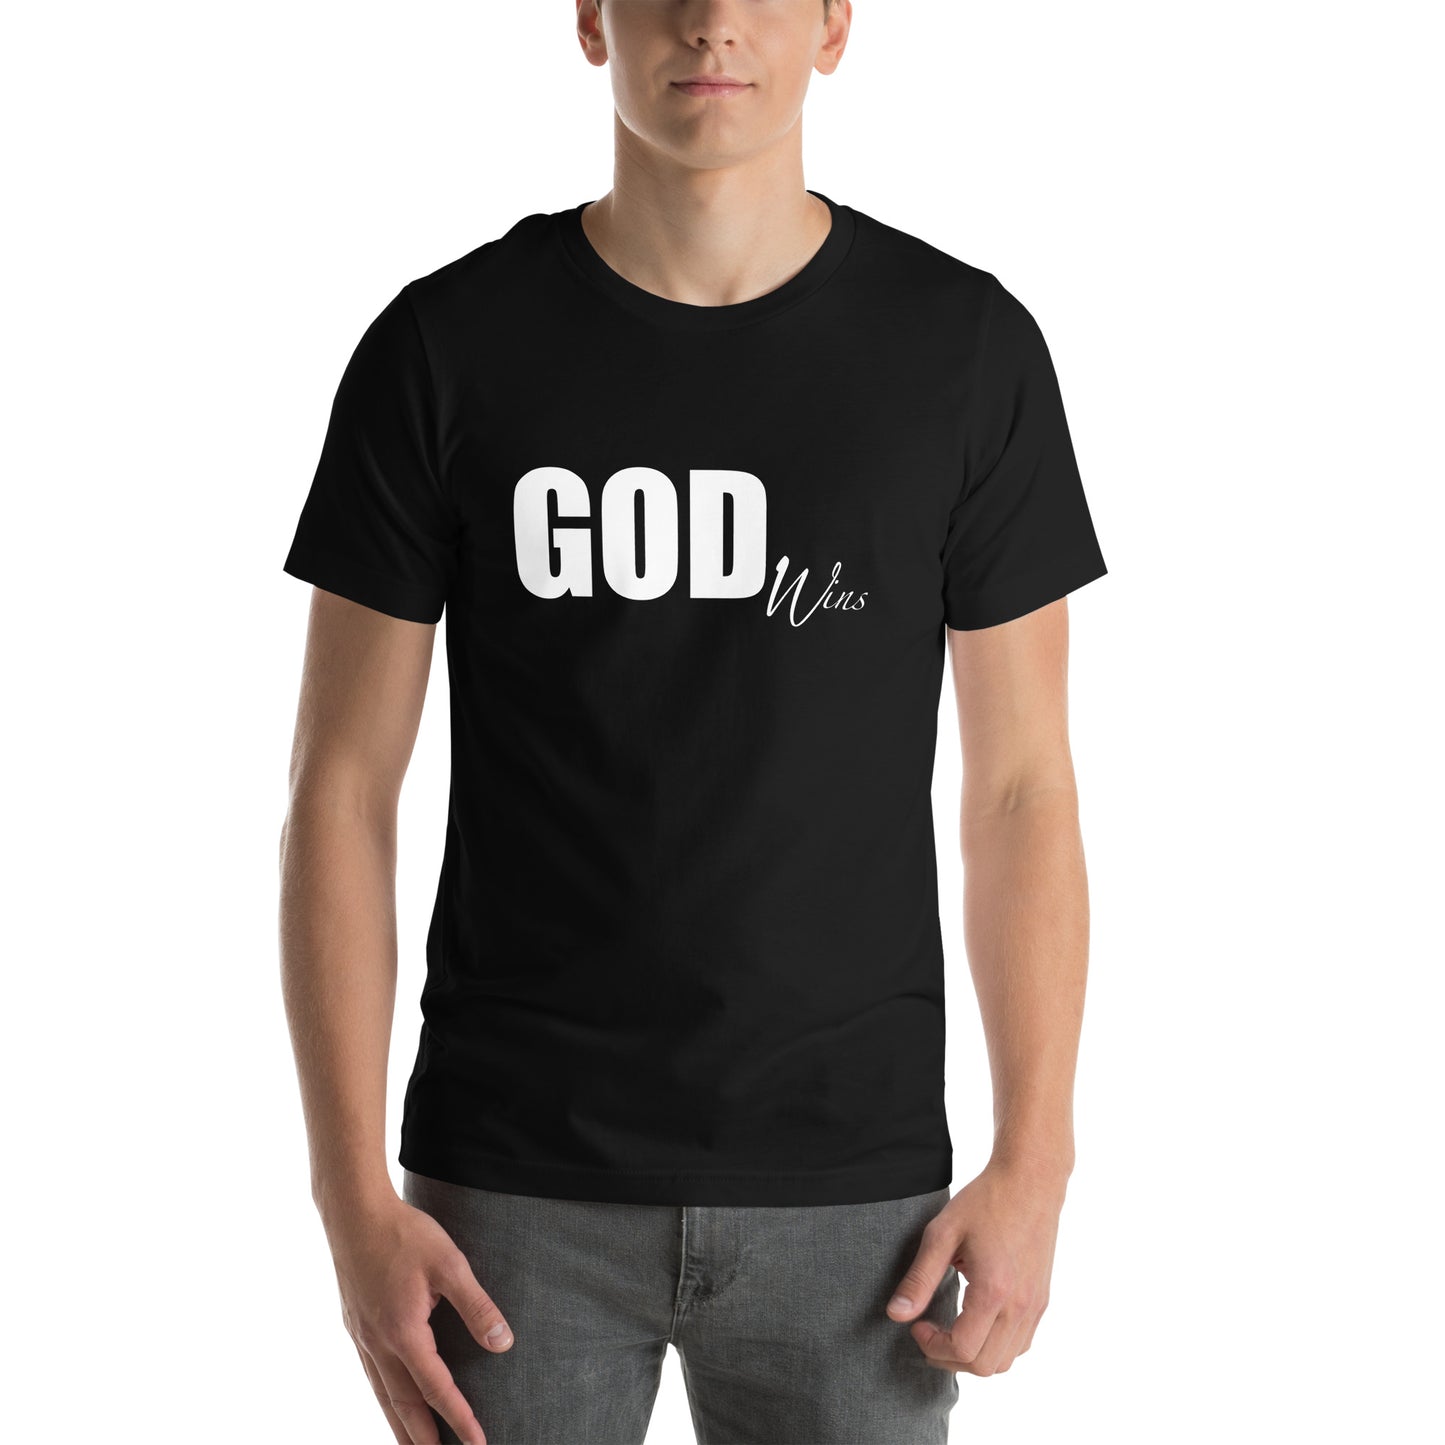 "God Wins" Men's t-shirt